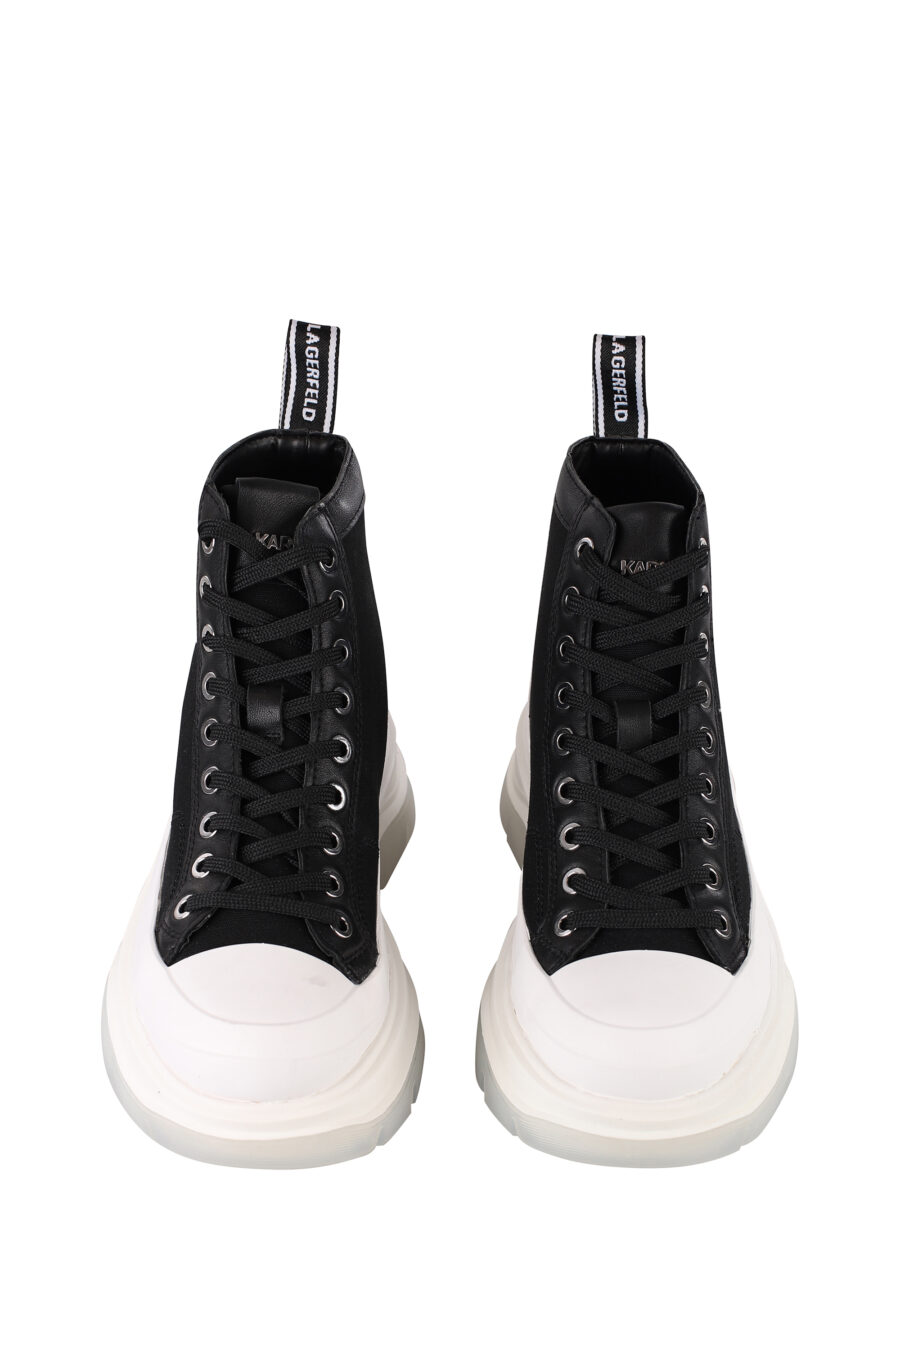 Zapatillas negras altas con suela blanca y cordones - IMG 1391